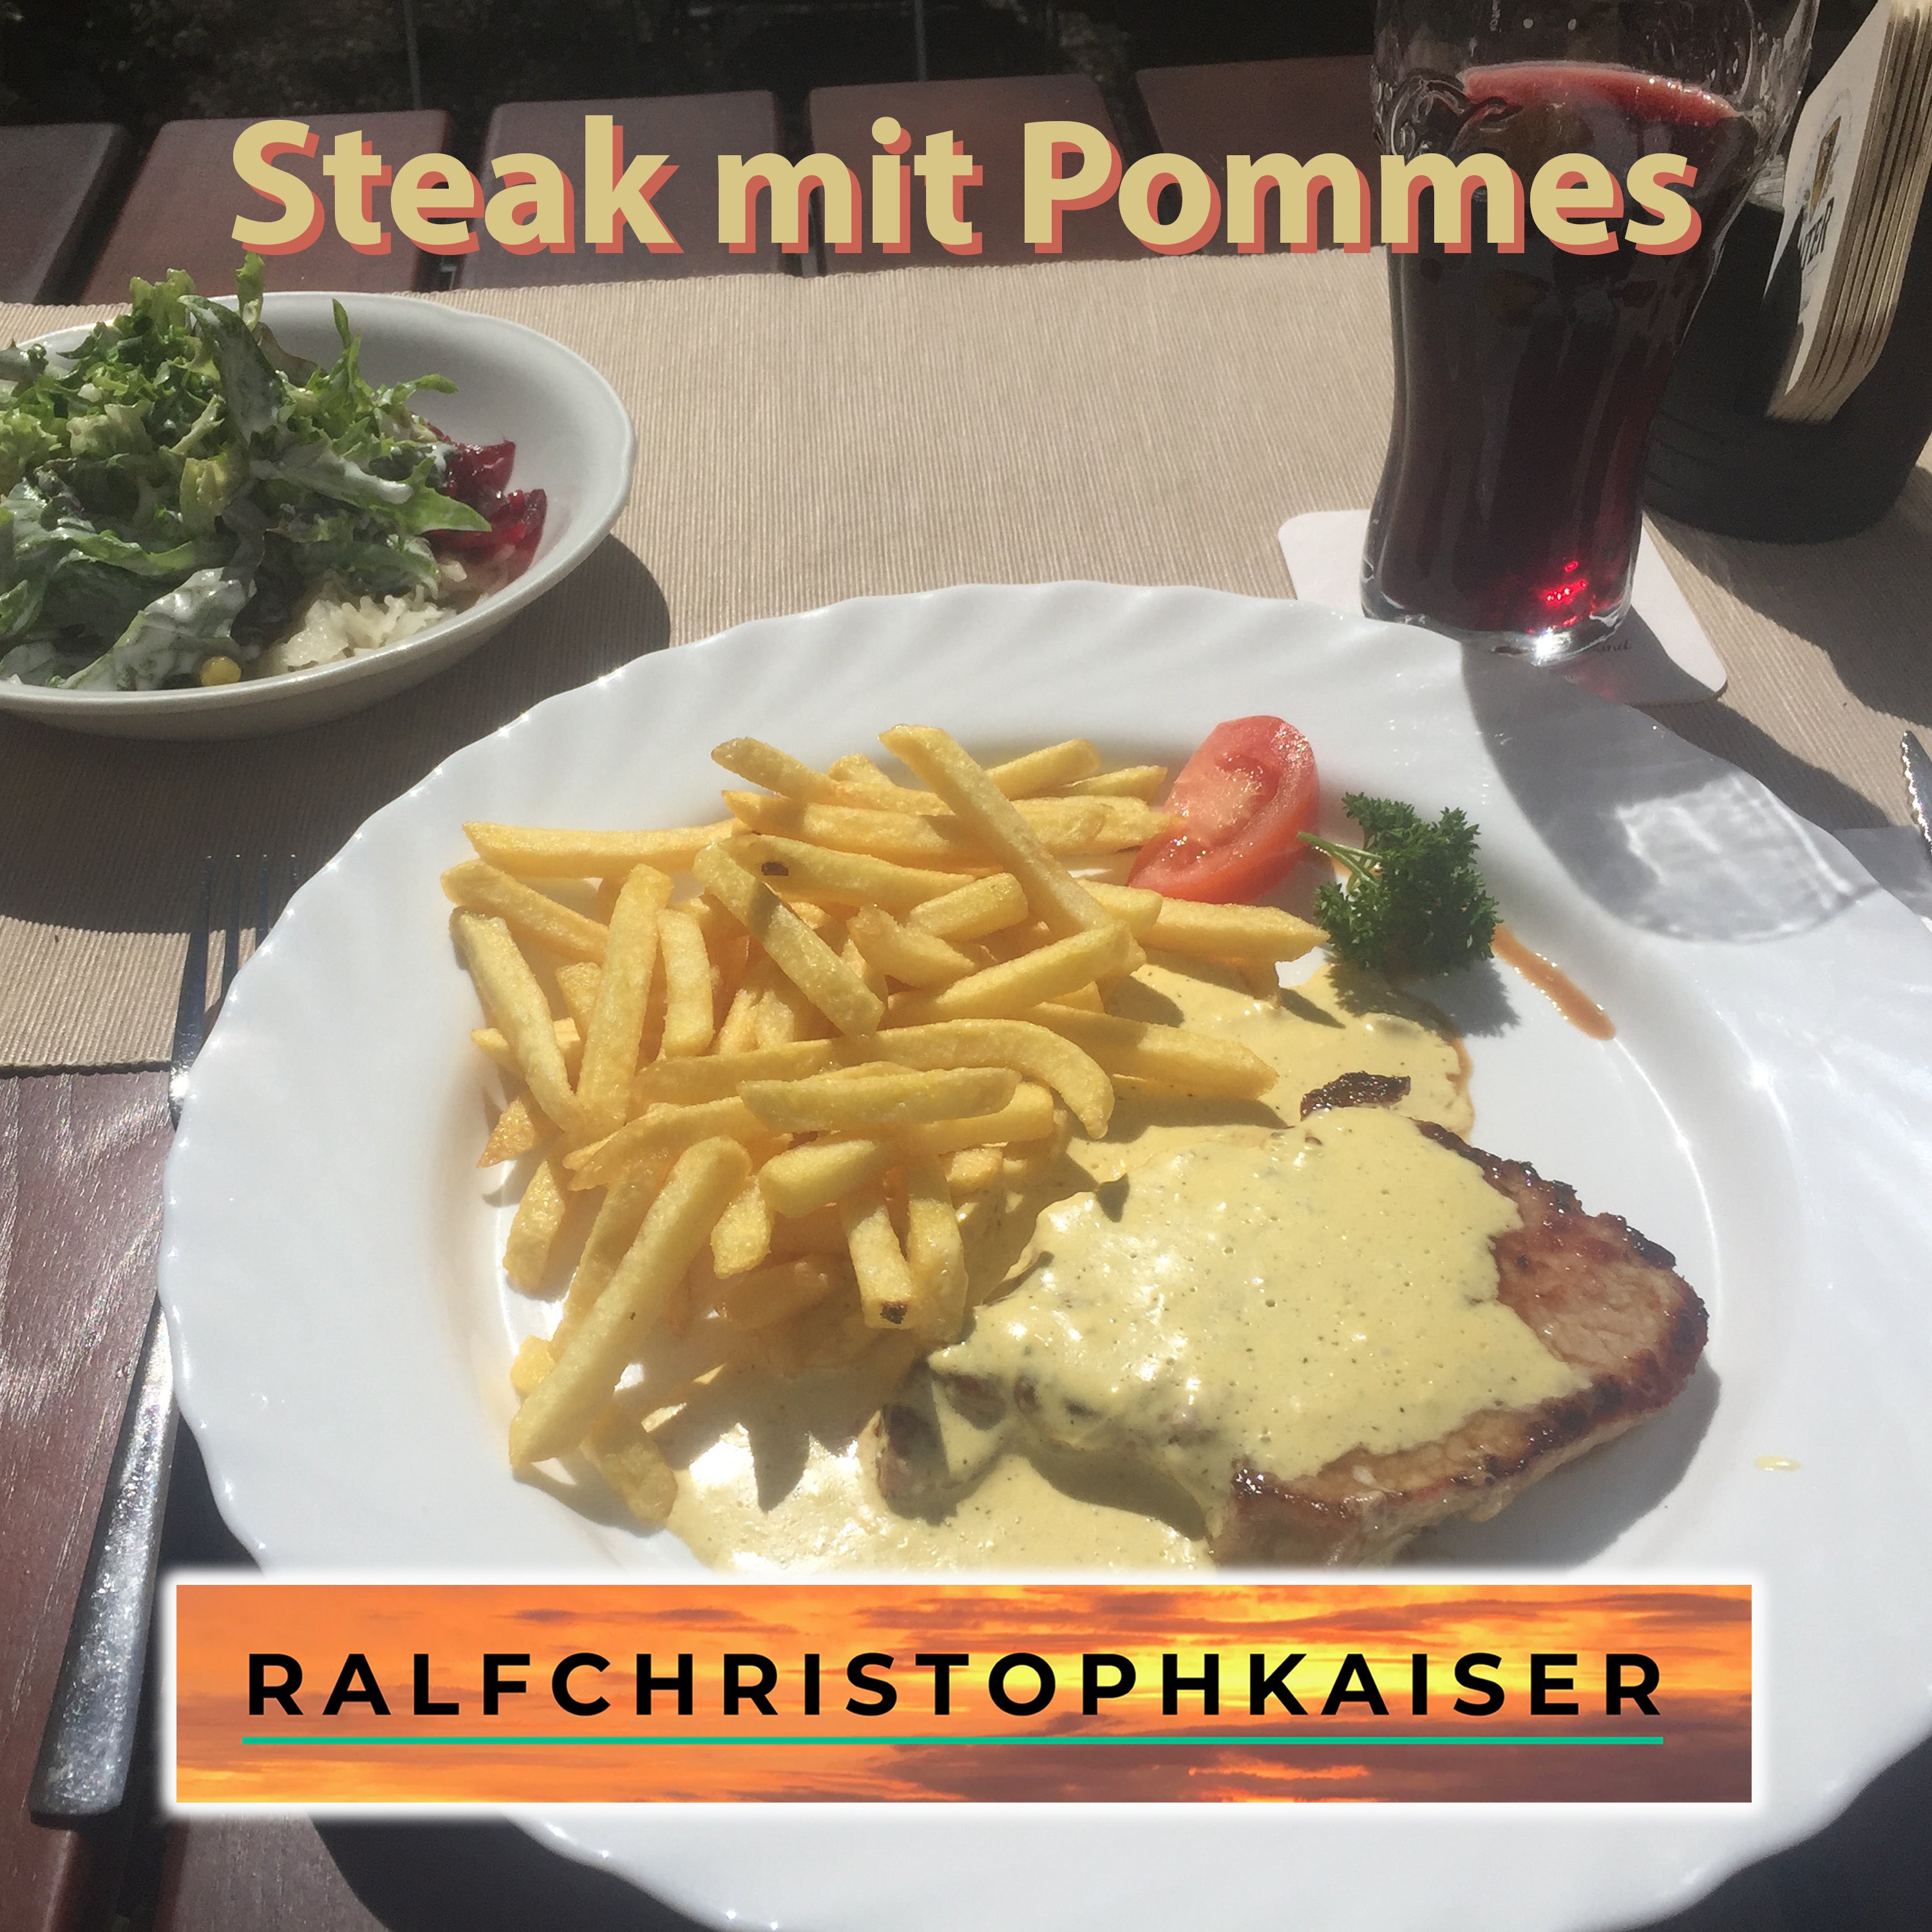 Steak mit Pommes by Ralf Christoph Kaiser Version 5 free Download - ralfchristophkaiser.com Musik und Noten